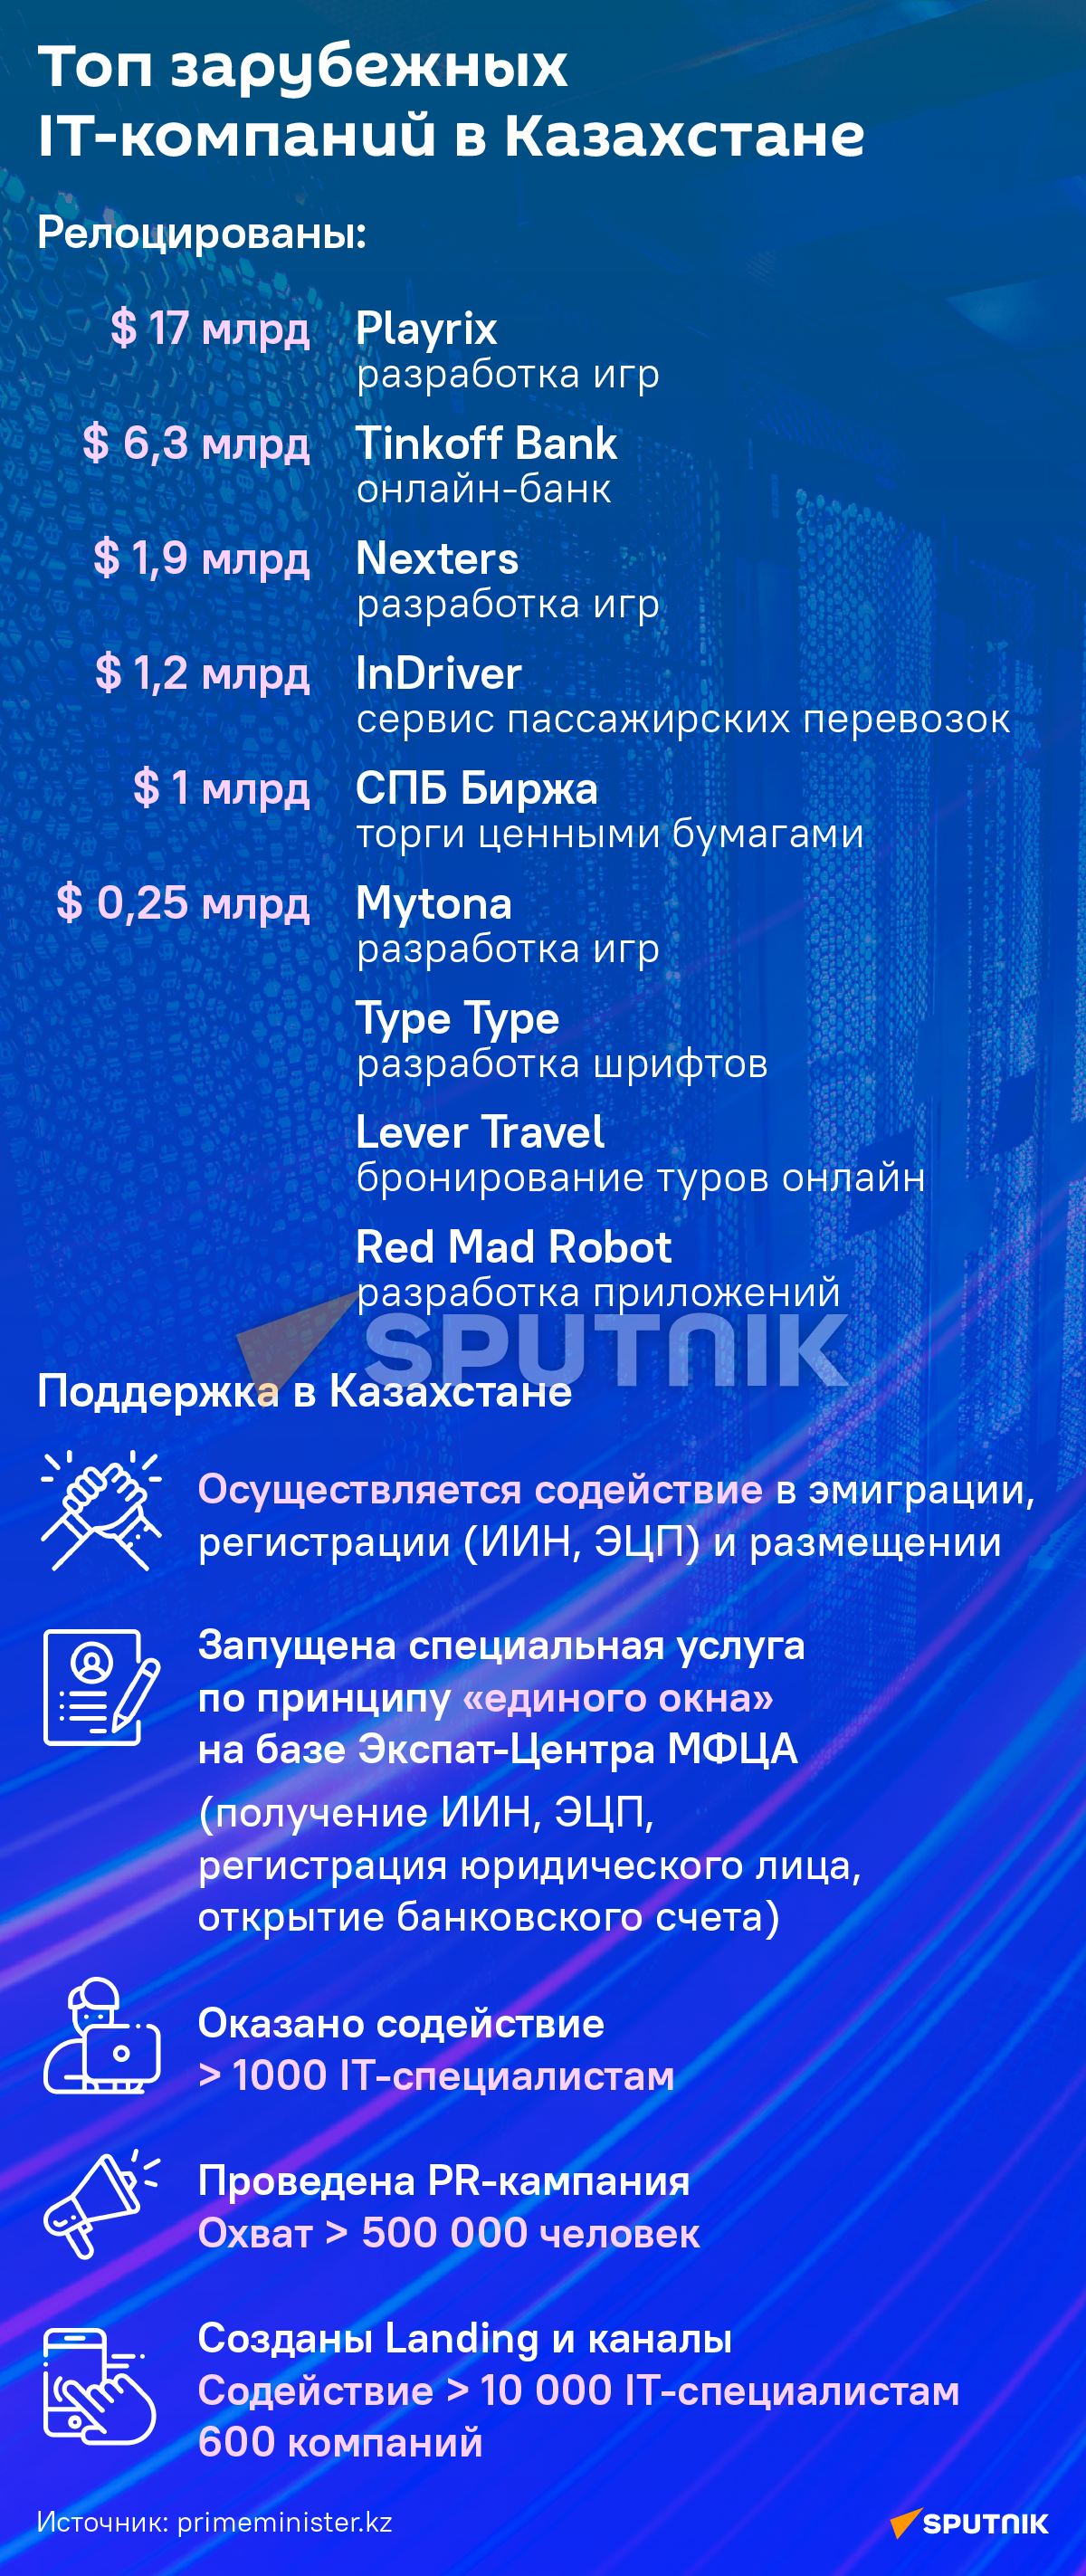 Иностранные IT-компании, релоцированные в Казахстан - Sputnik Казахстан